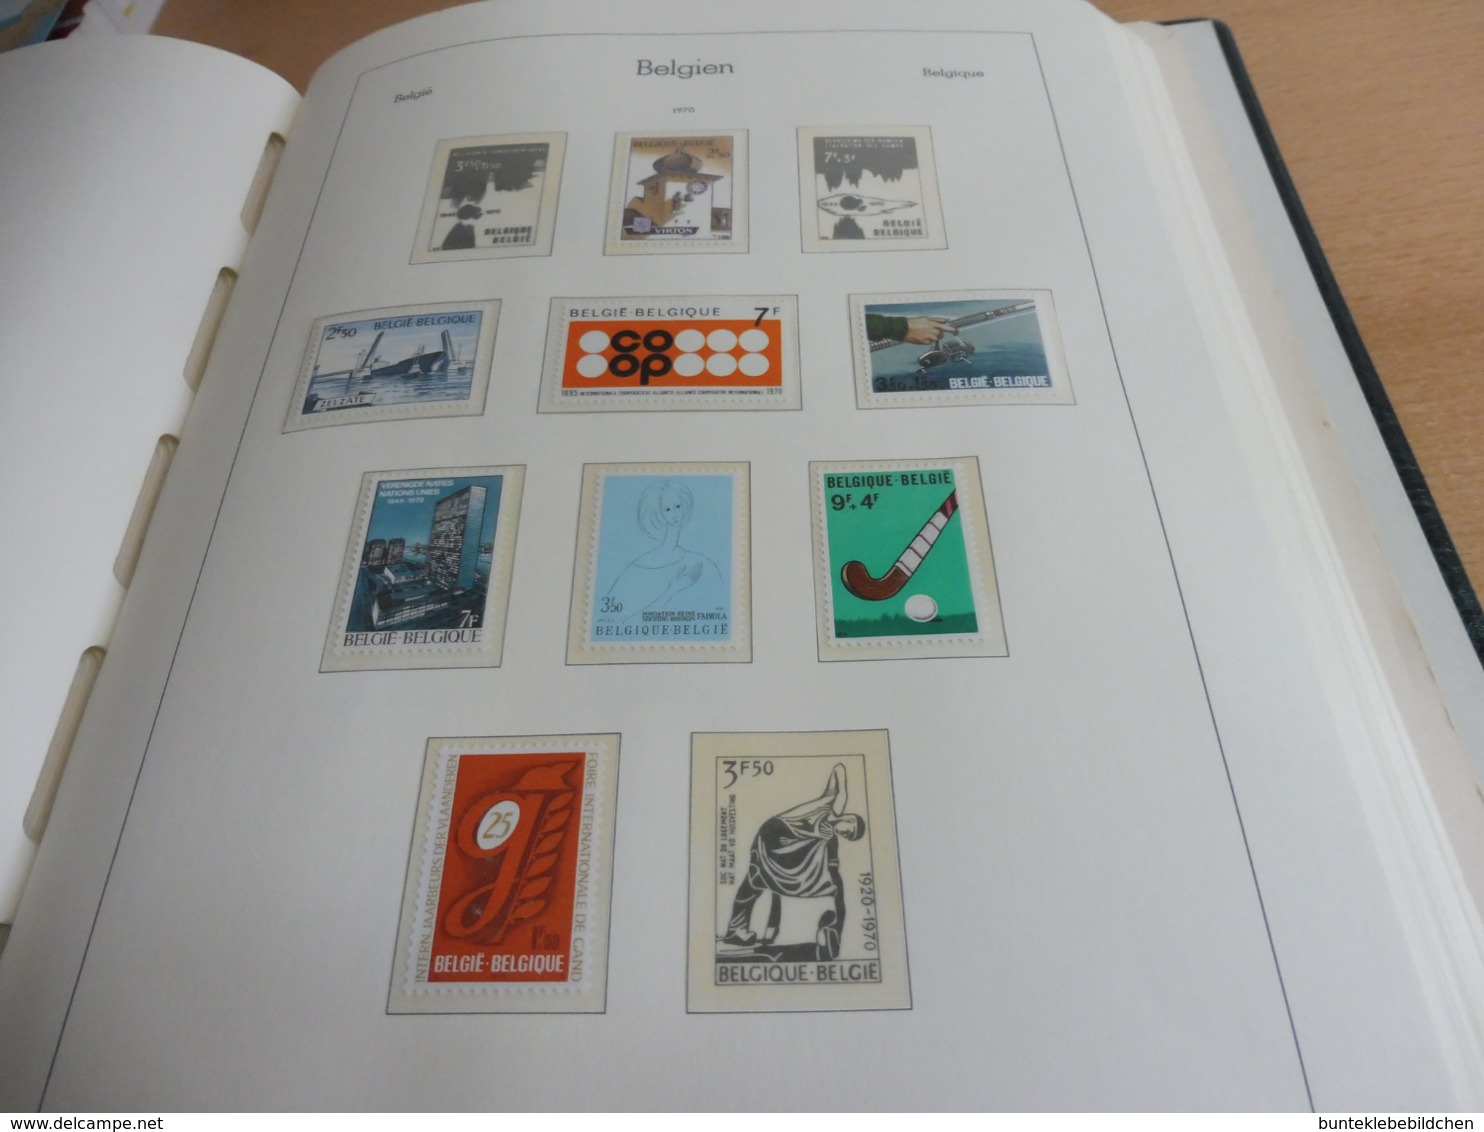 Belgien Sammlung aus 57-81, auf Leuchtturm; mit 99 Bildern NICHT ALLES BEBILDERT !!!